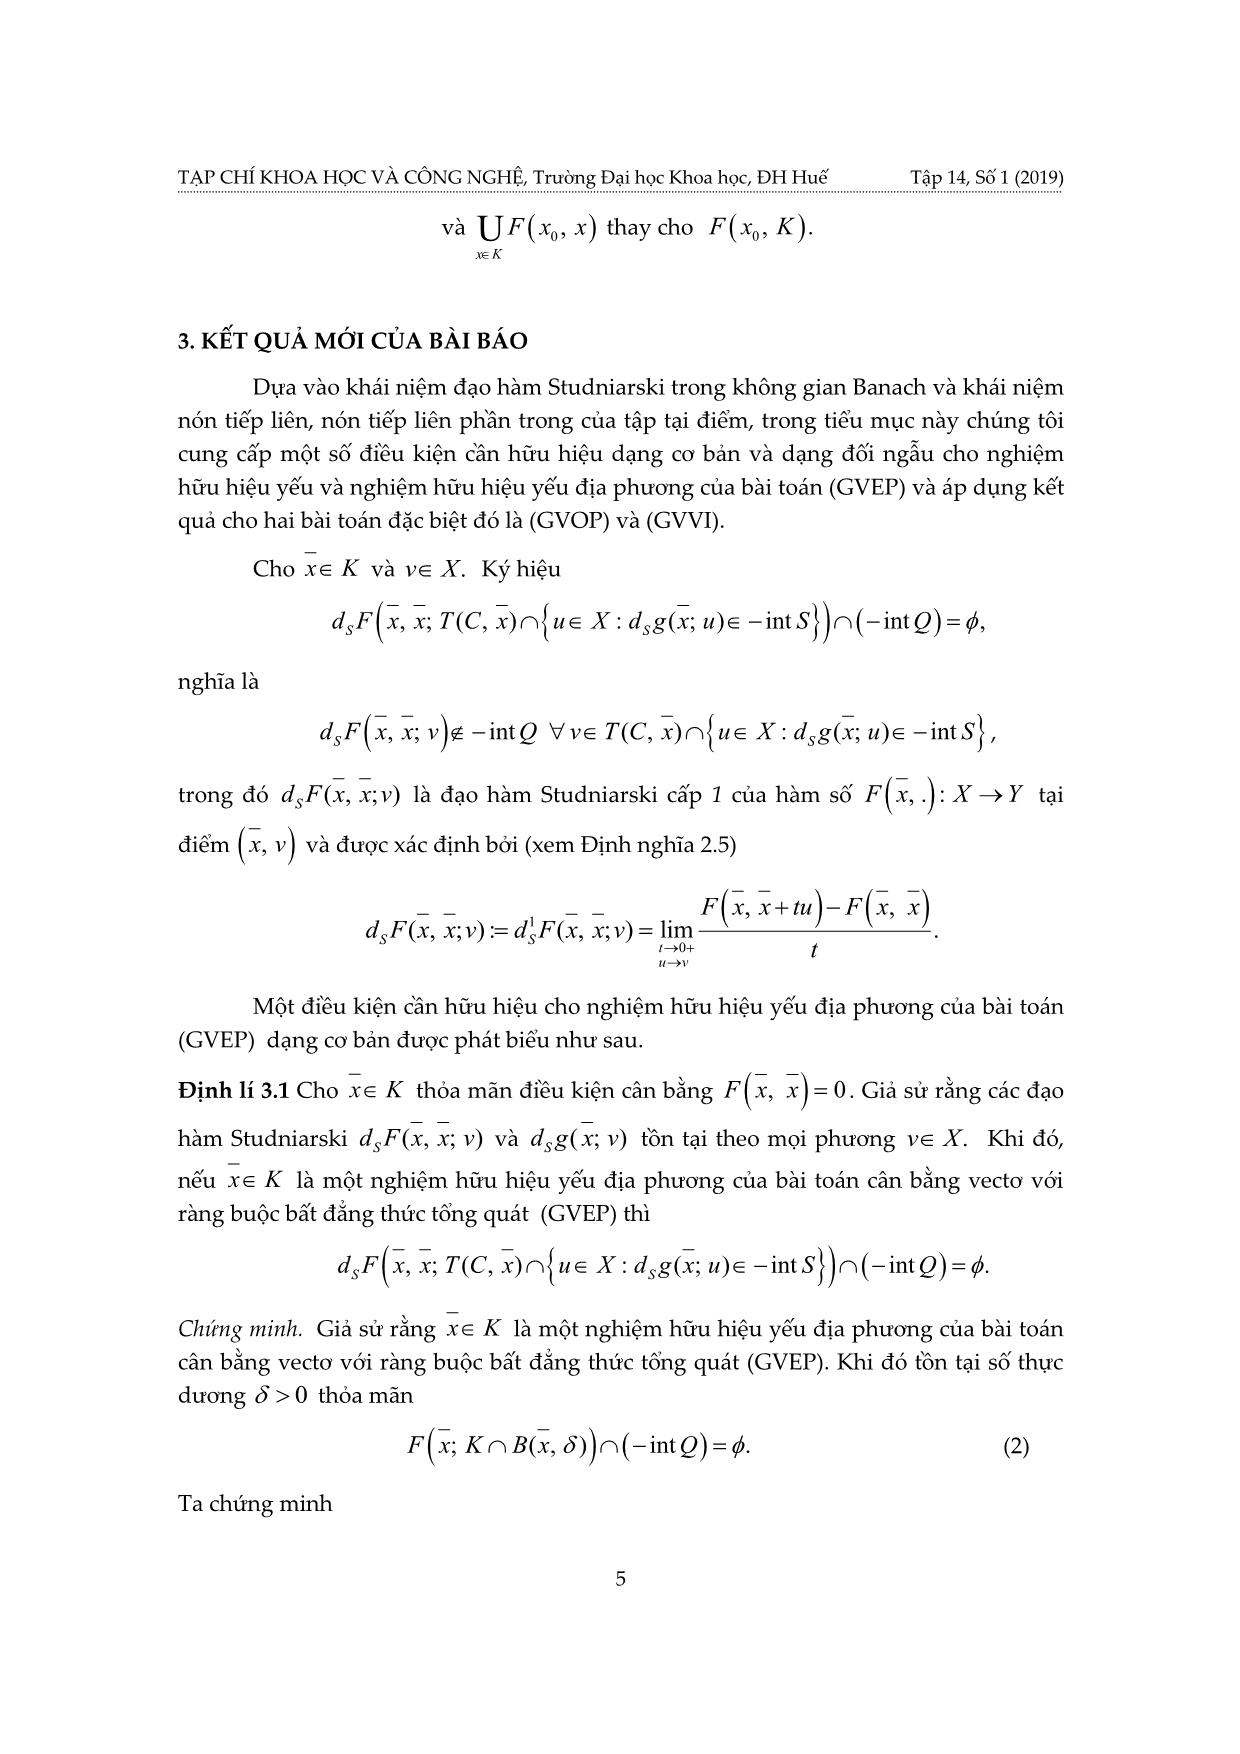 Điều kiện cần hữu hiệu cho nghiệm yếu địa phương của bài toán cân bằng vectơ có ràng buộc bất đẳng thức tổng quát và áp dụng trang 5